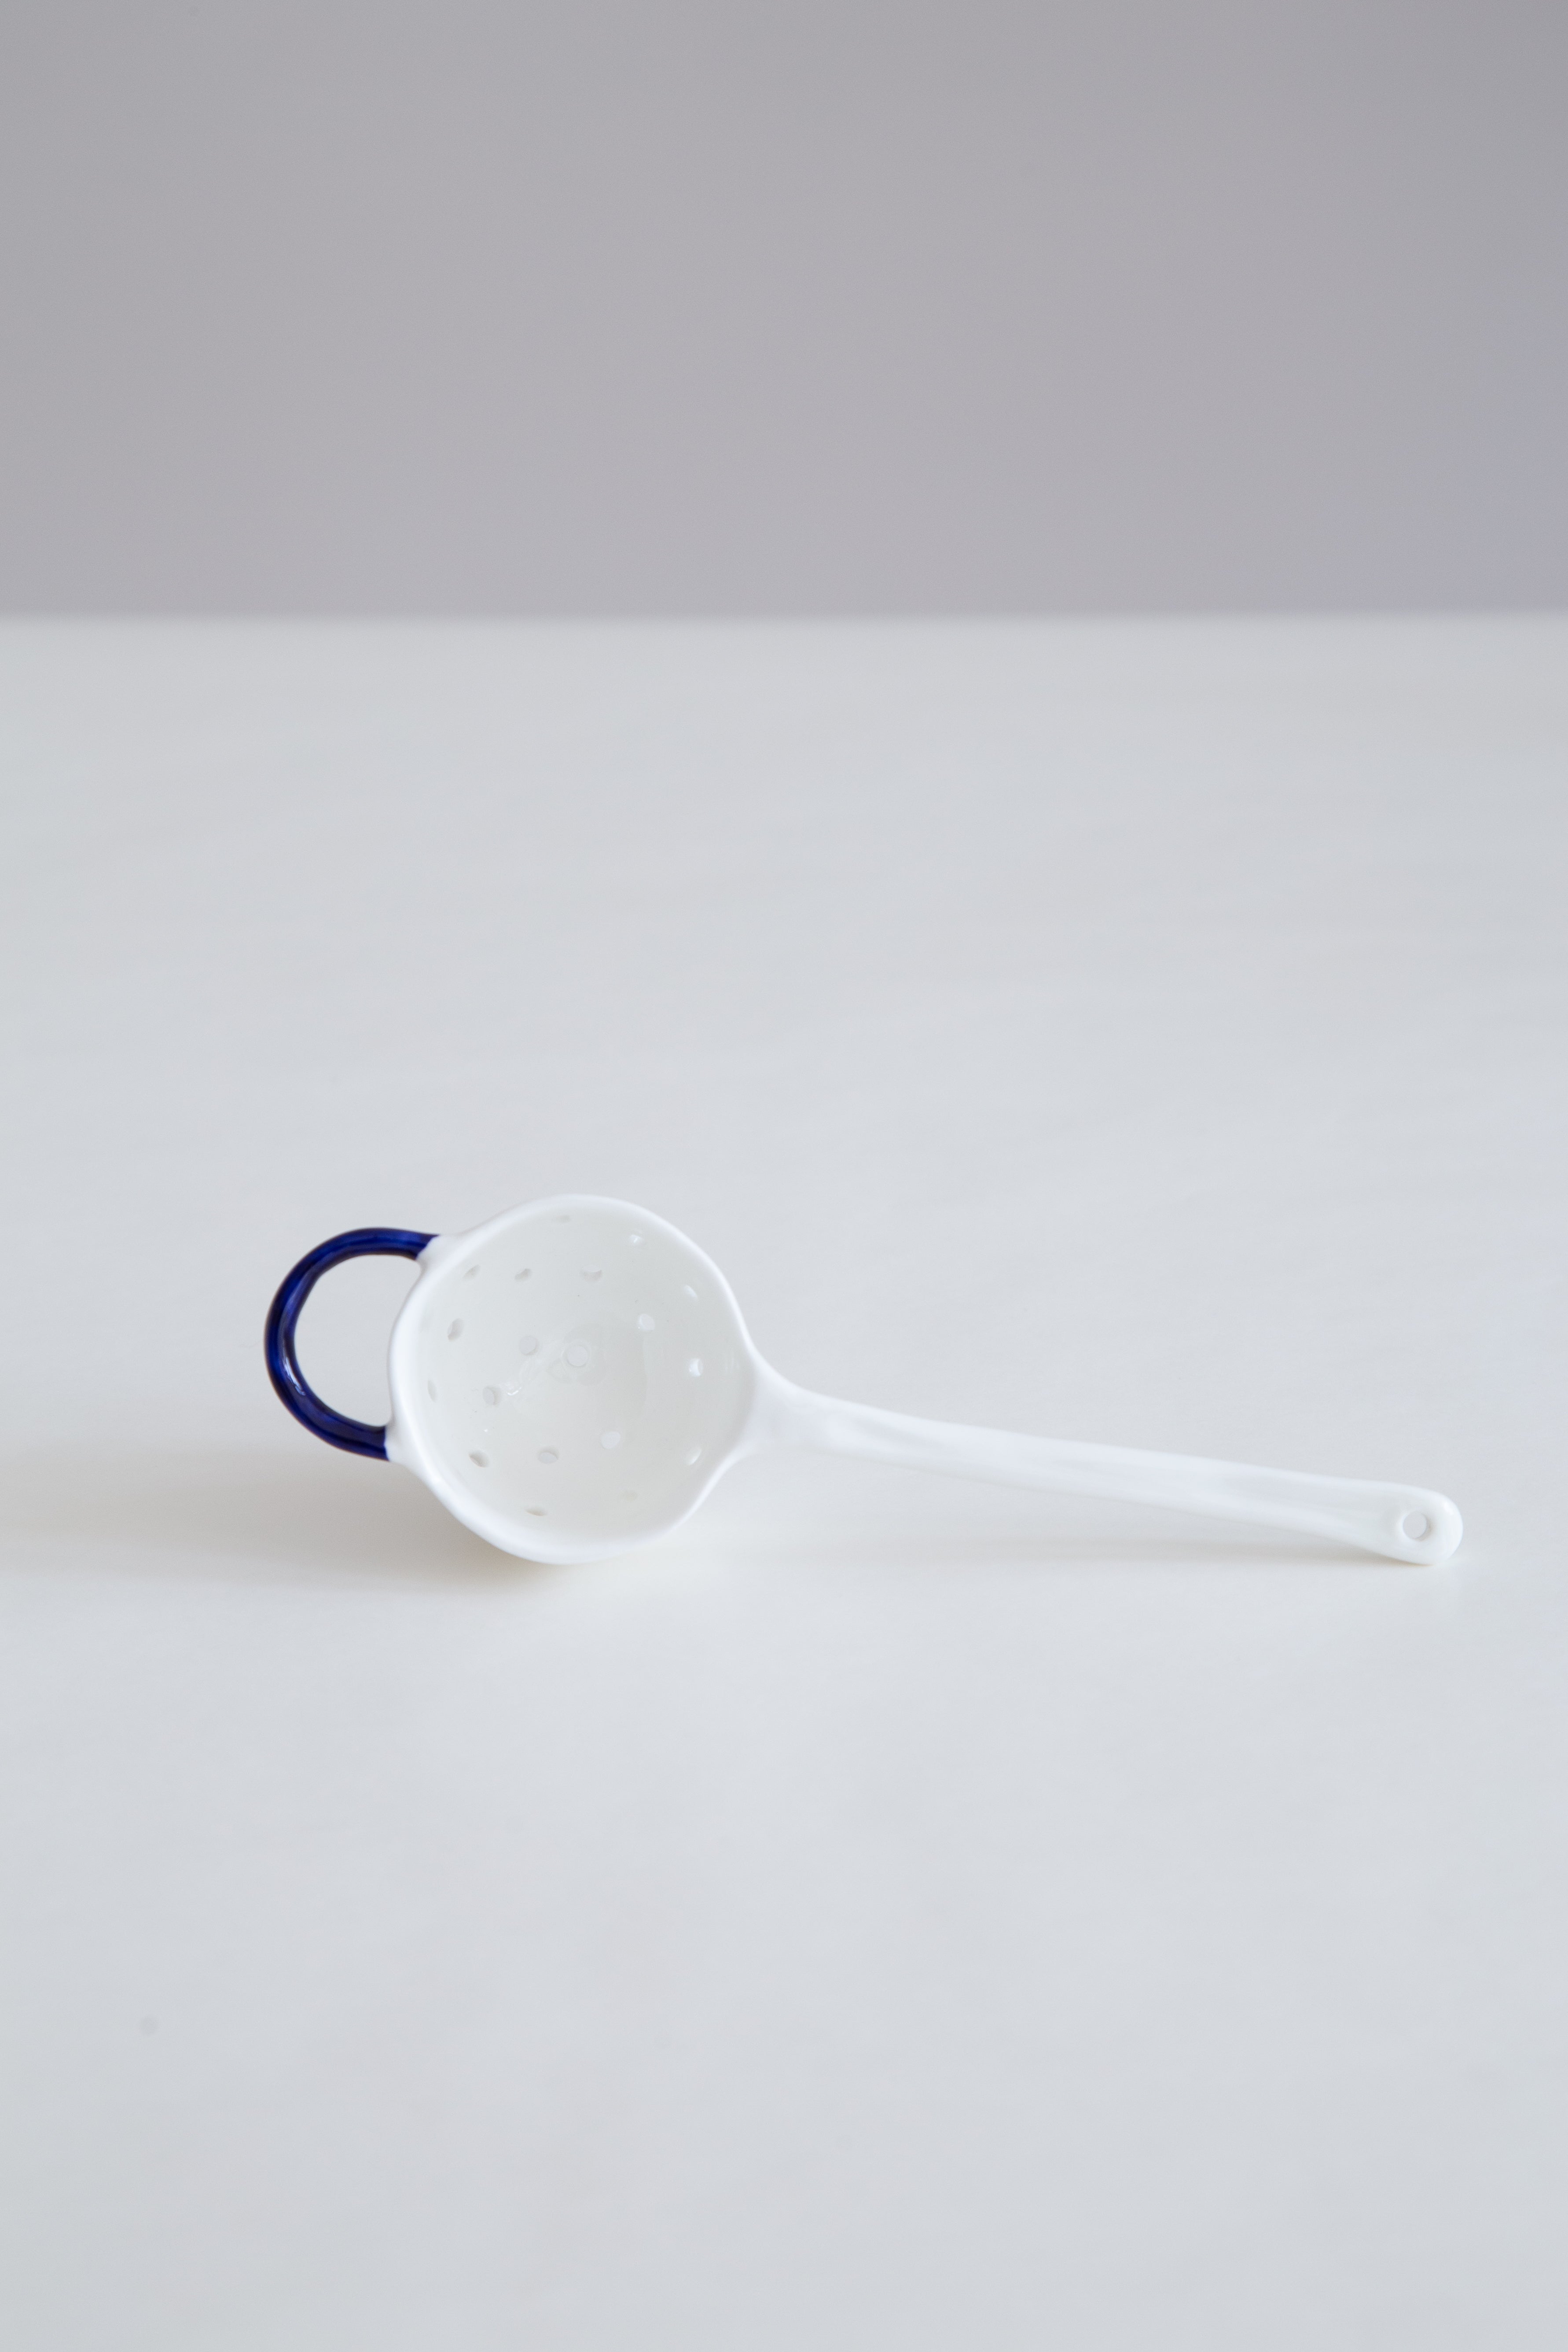 Feldspar Tea Strainer in White and Cobalt